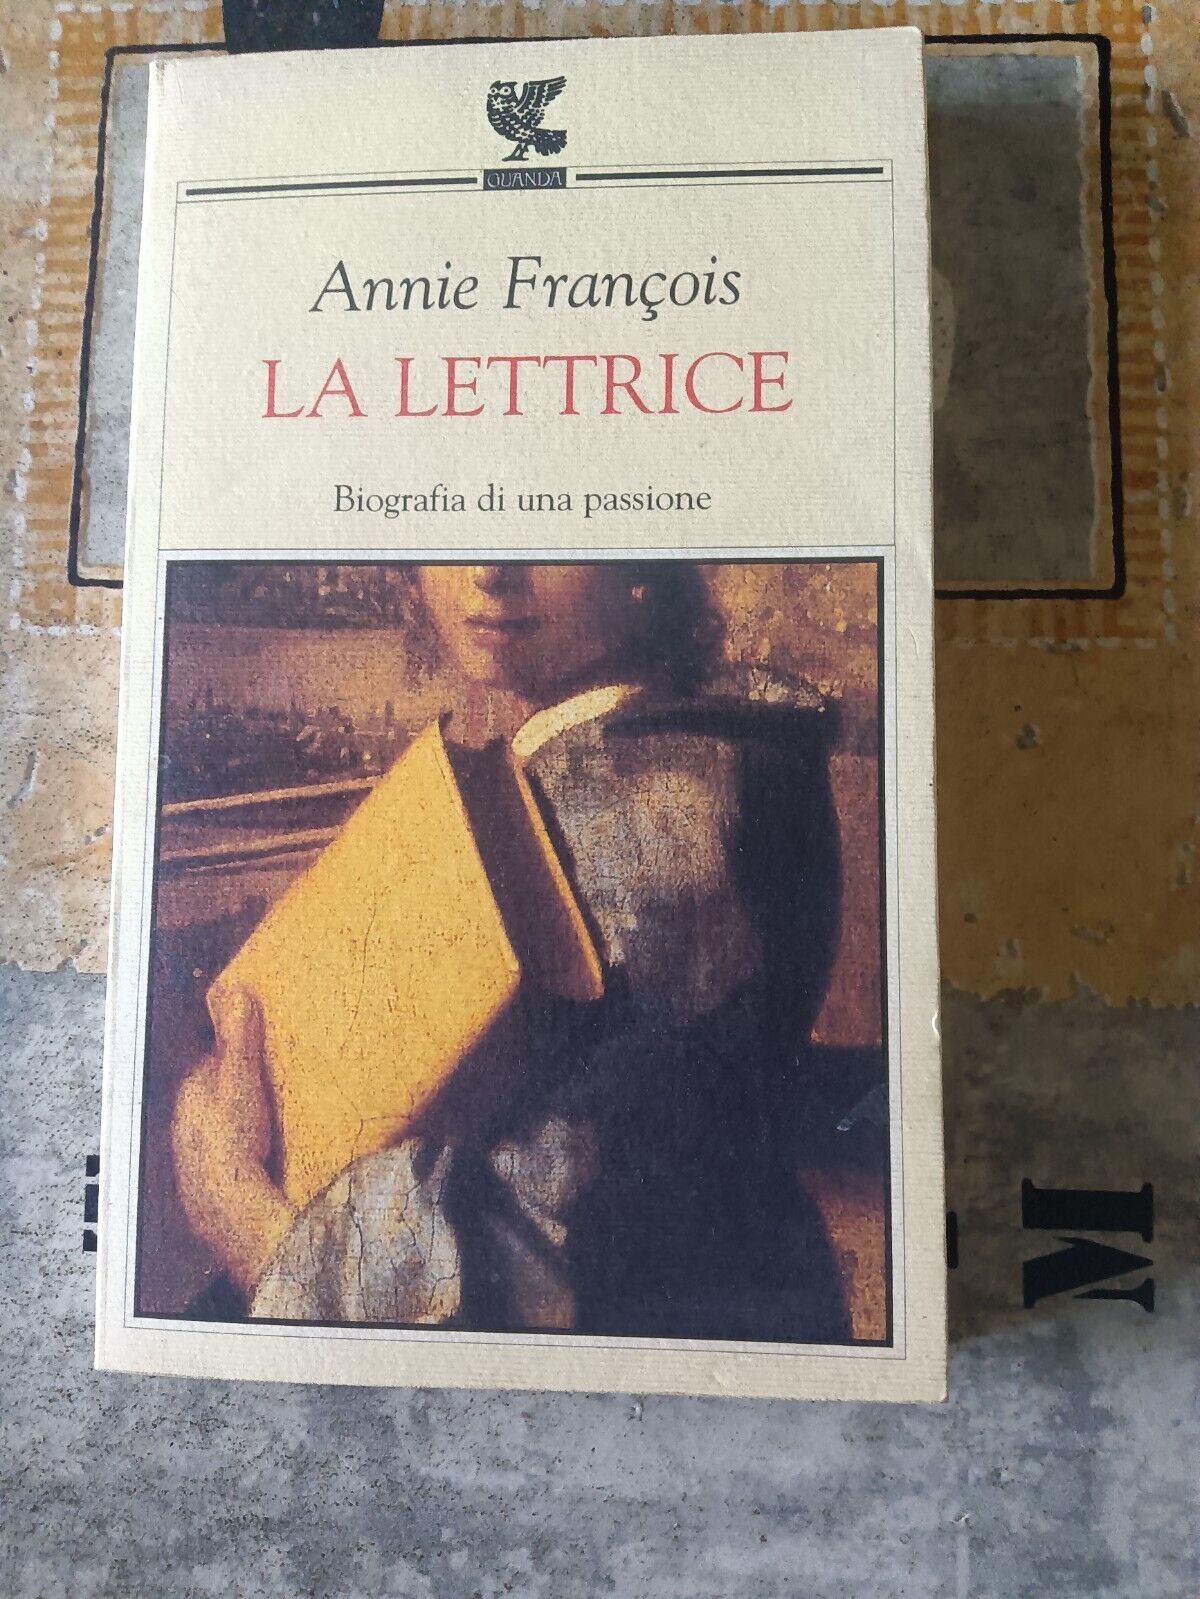 La lettrice | Annie Francois - Guanda